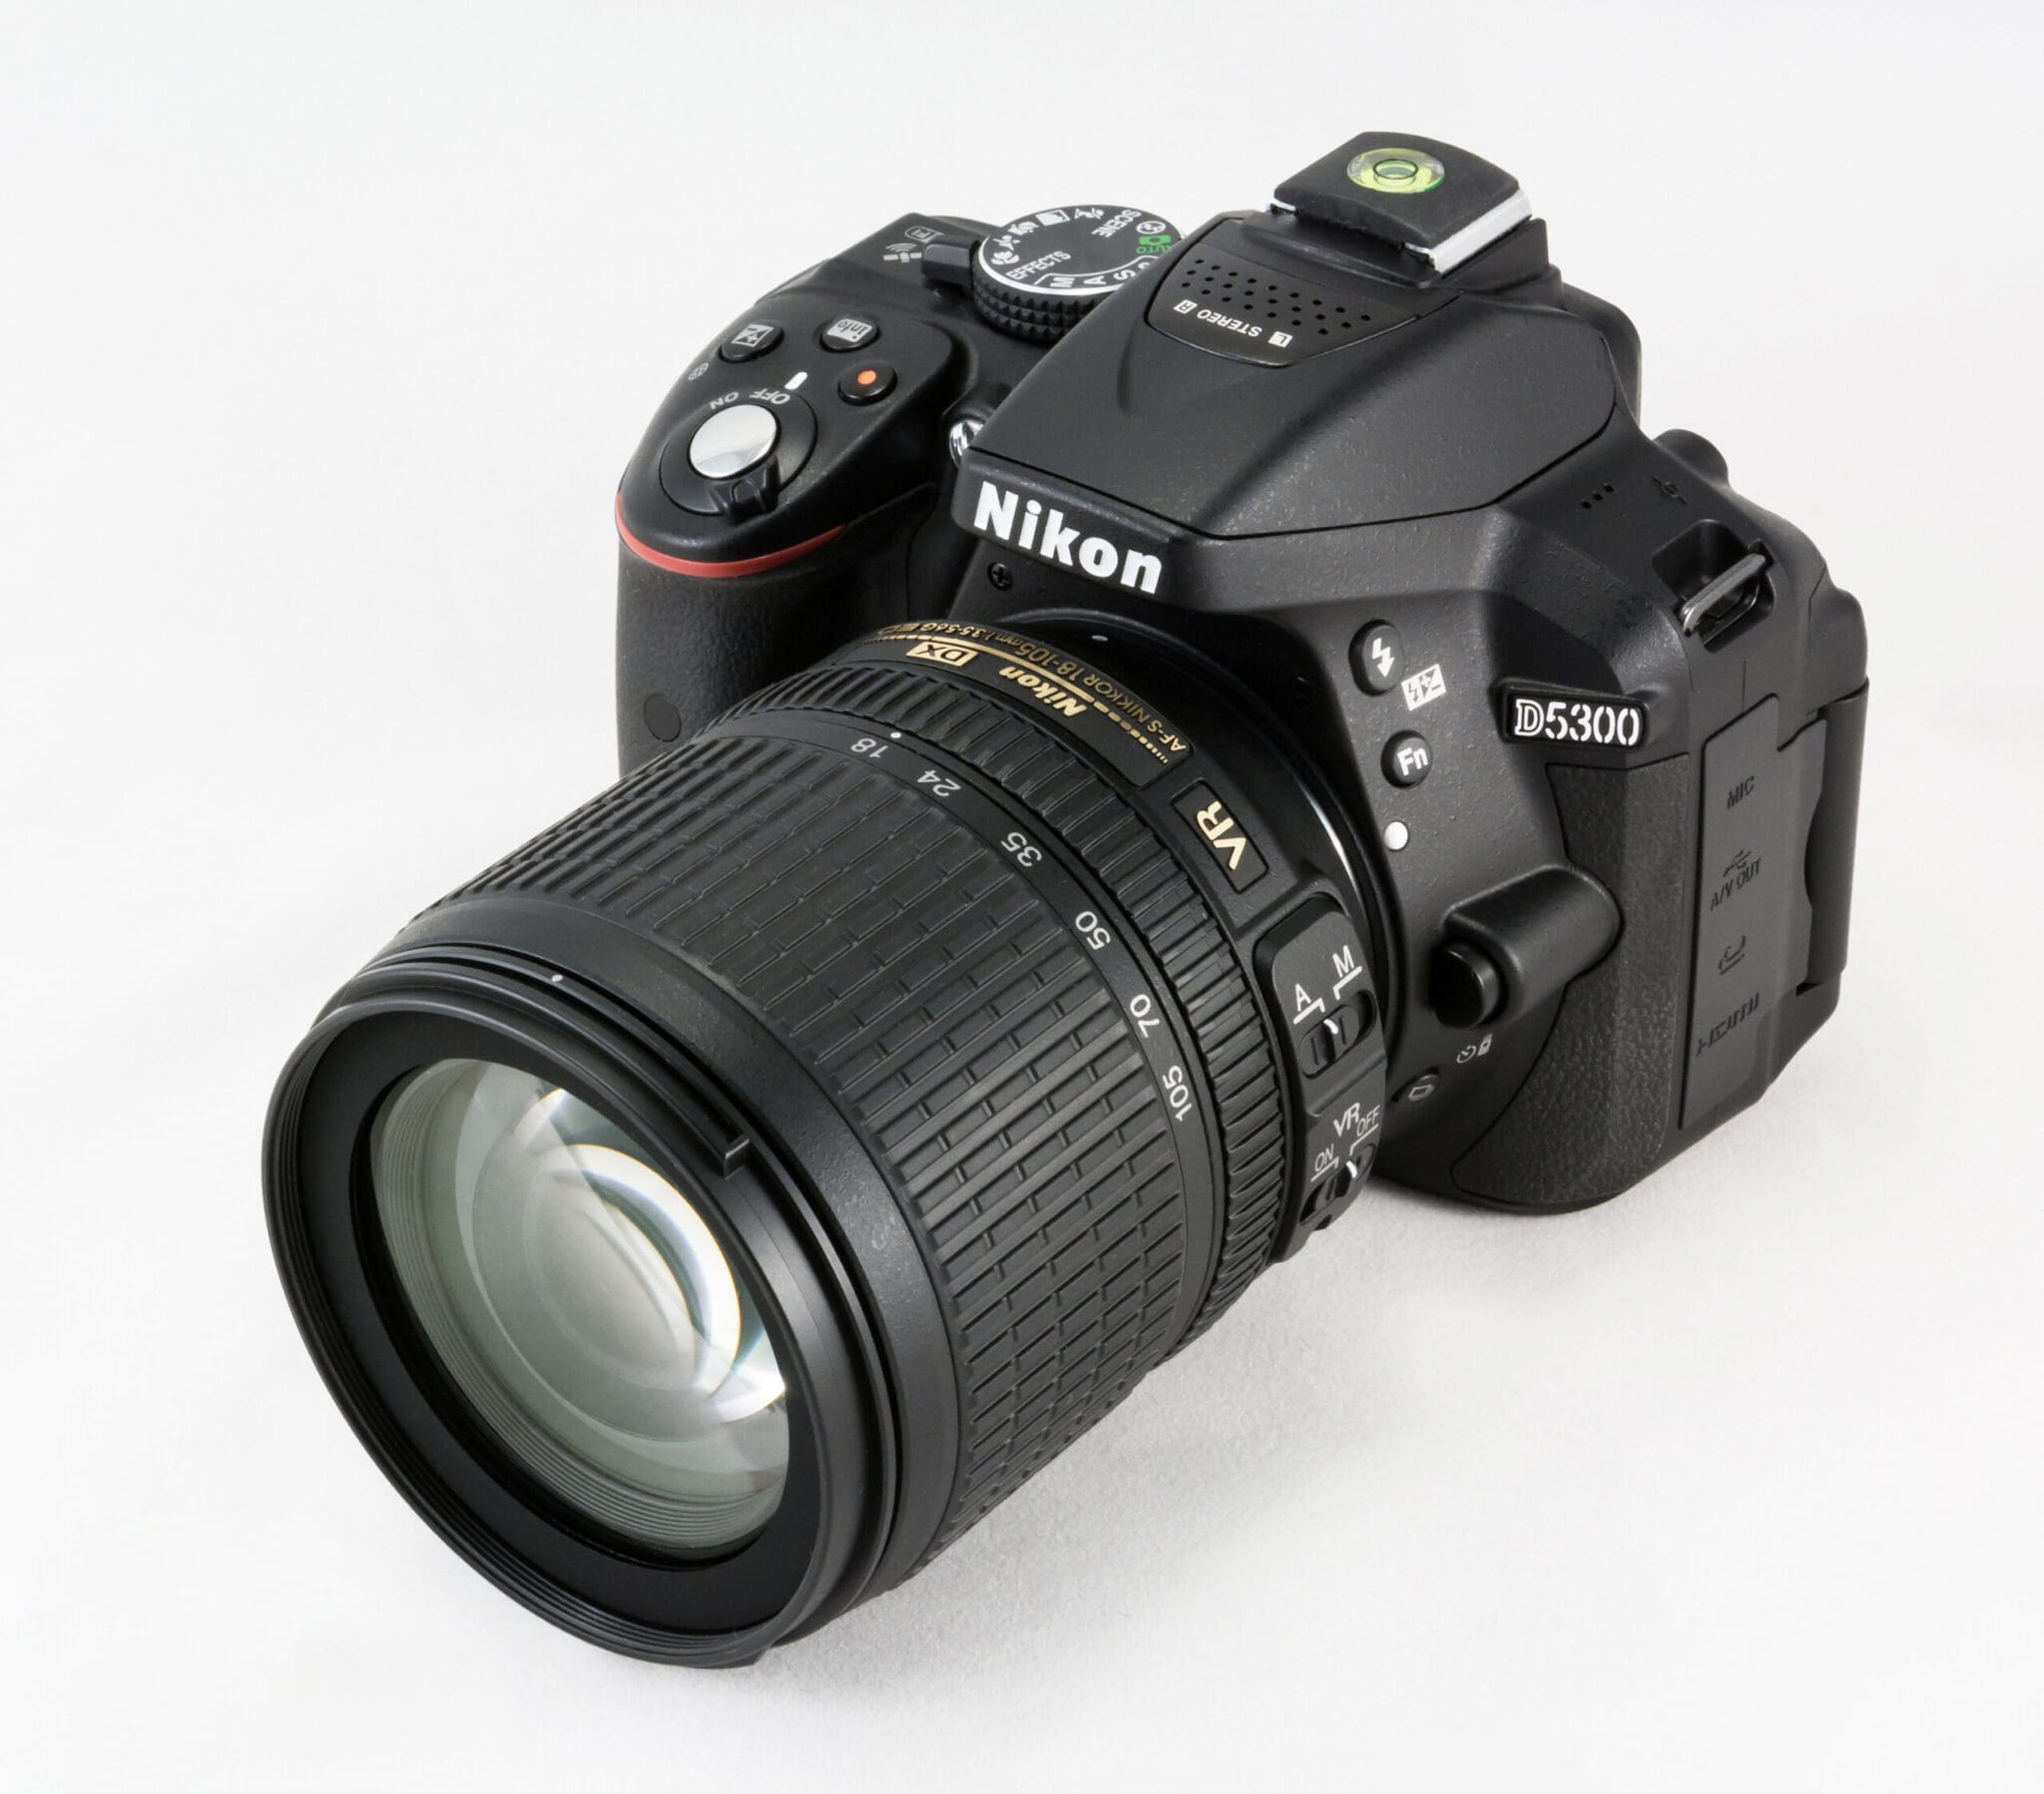 Nikon D5300 1 skaliert